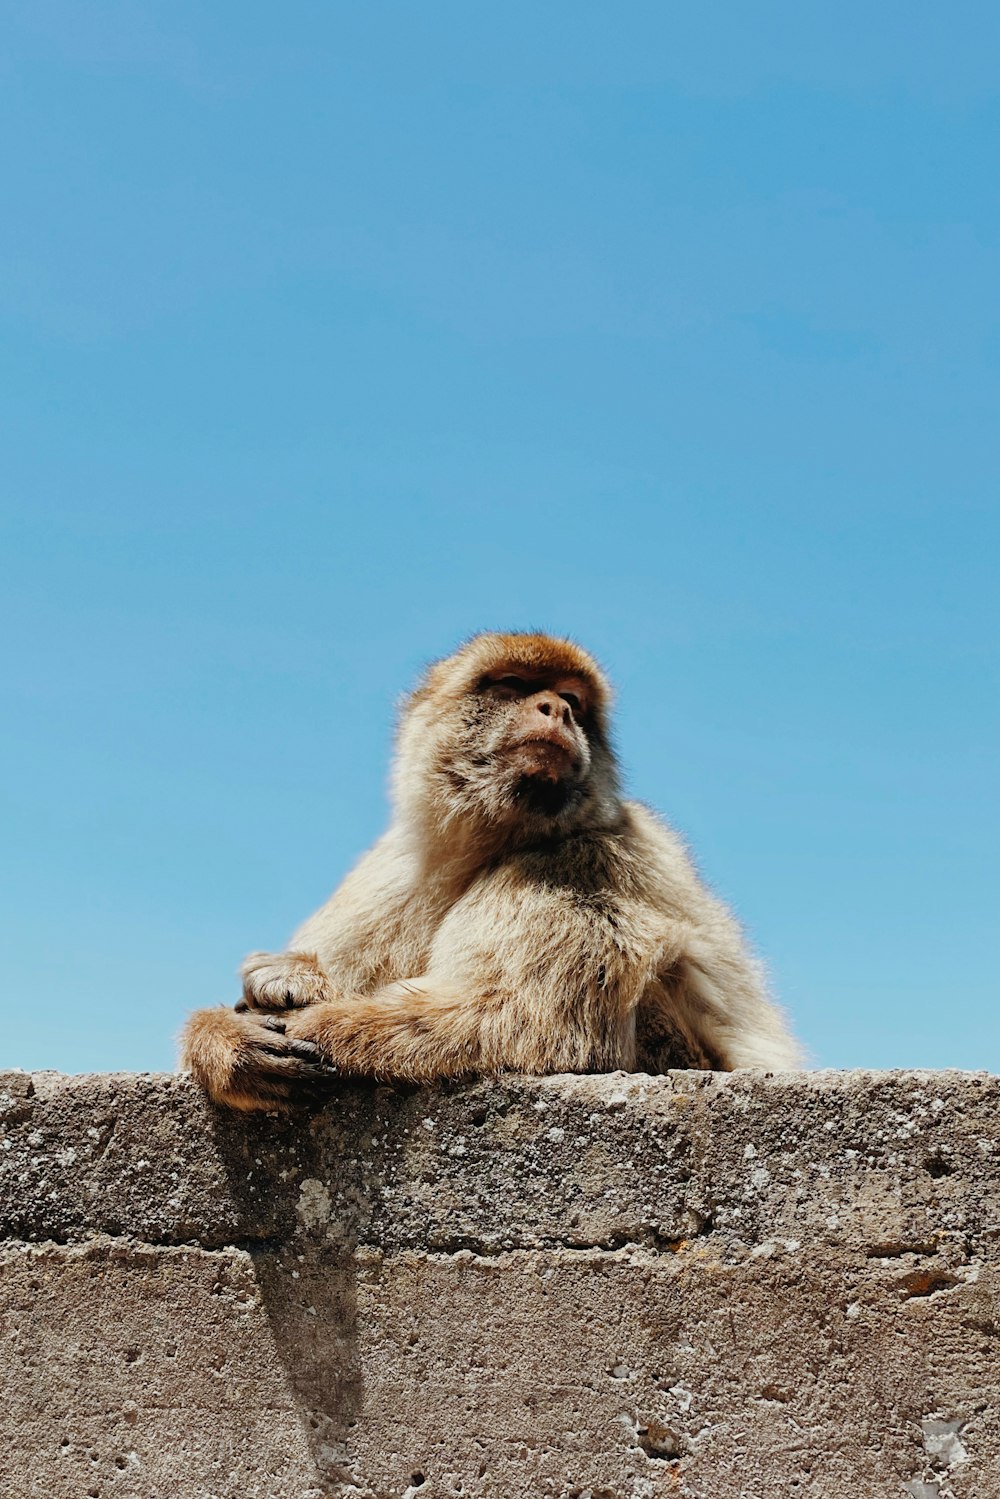 石垣の上に座る猿